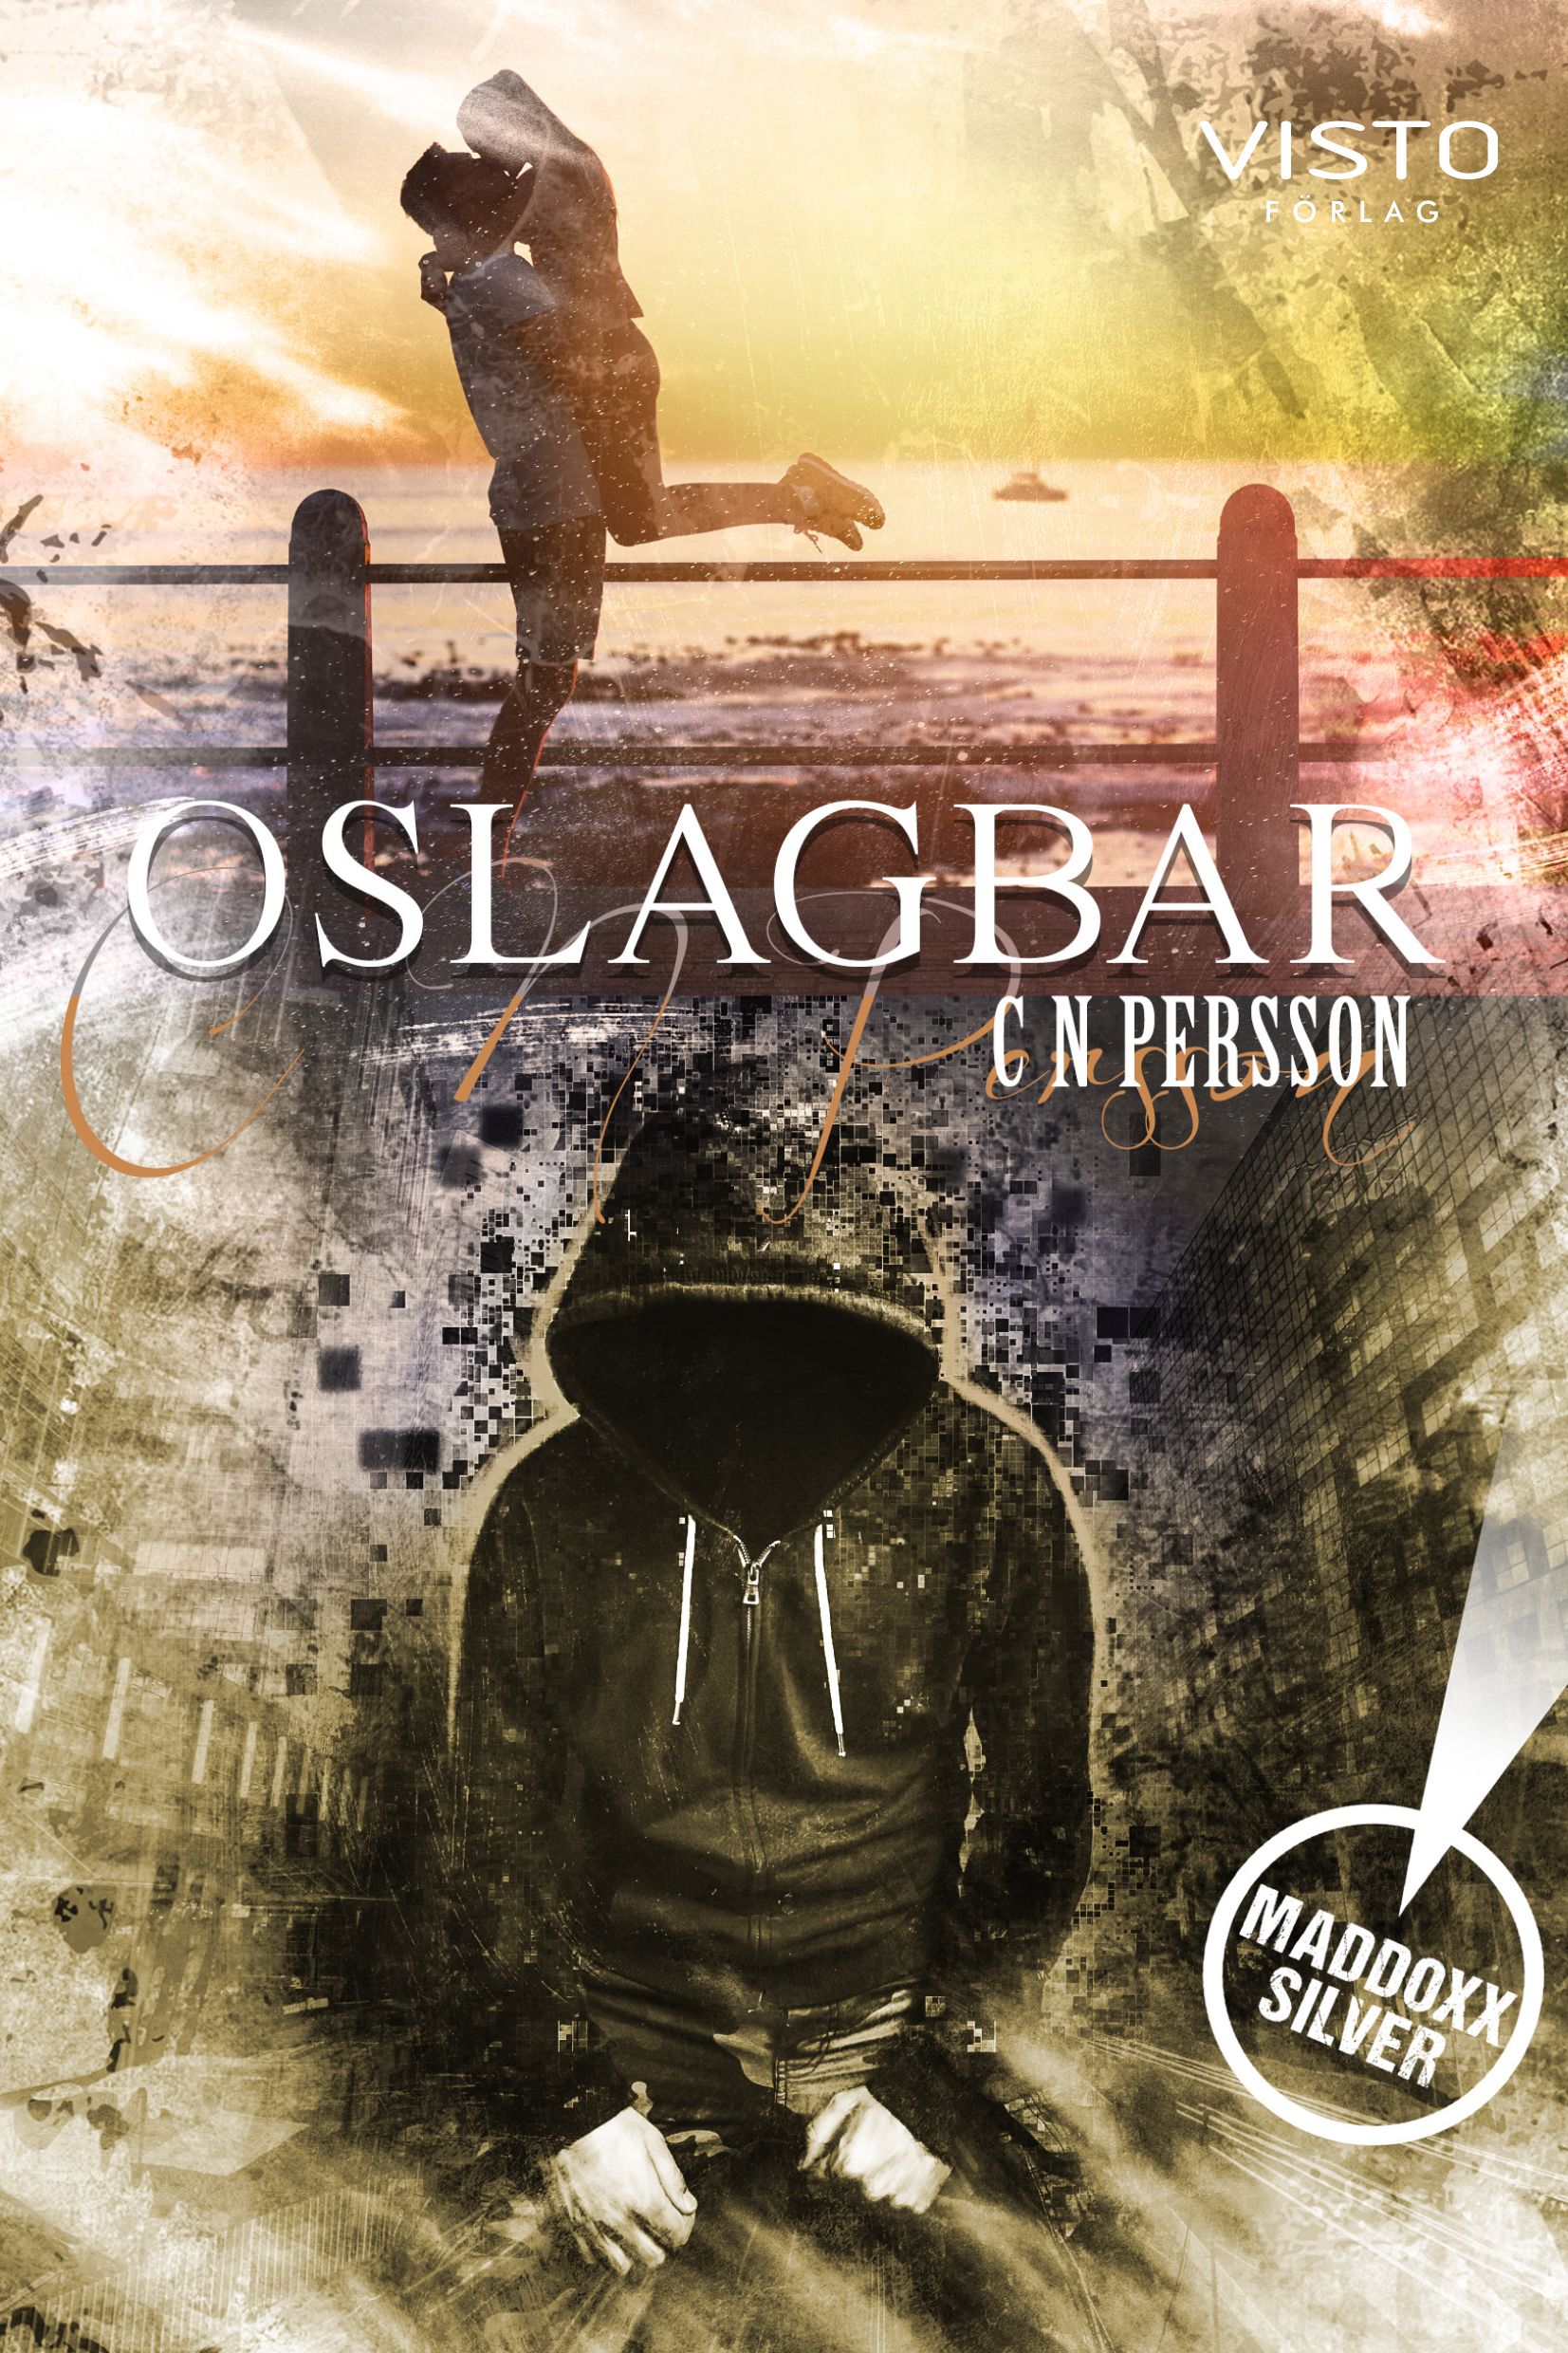 Oslagbar, eBook by C N Persson